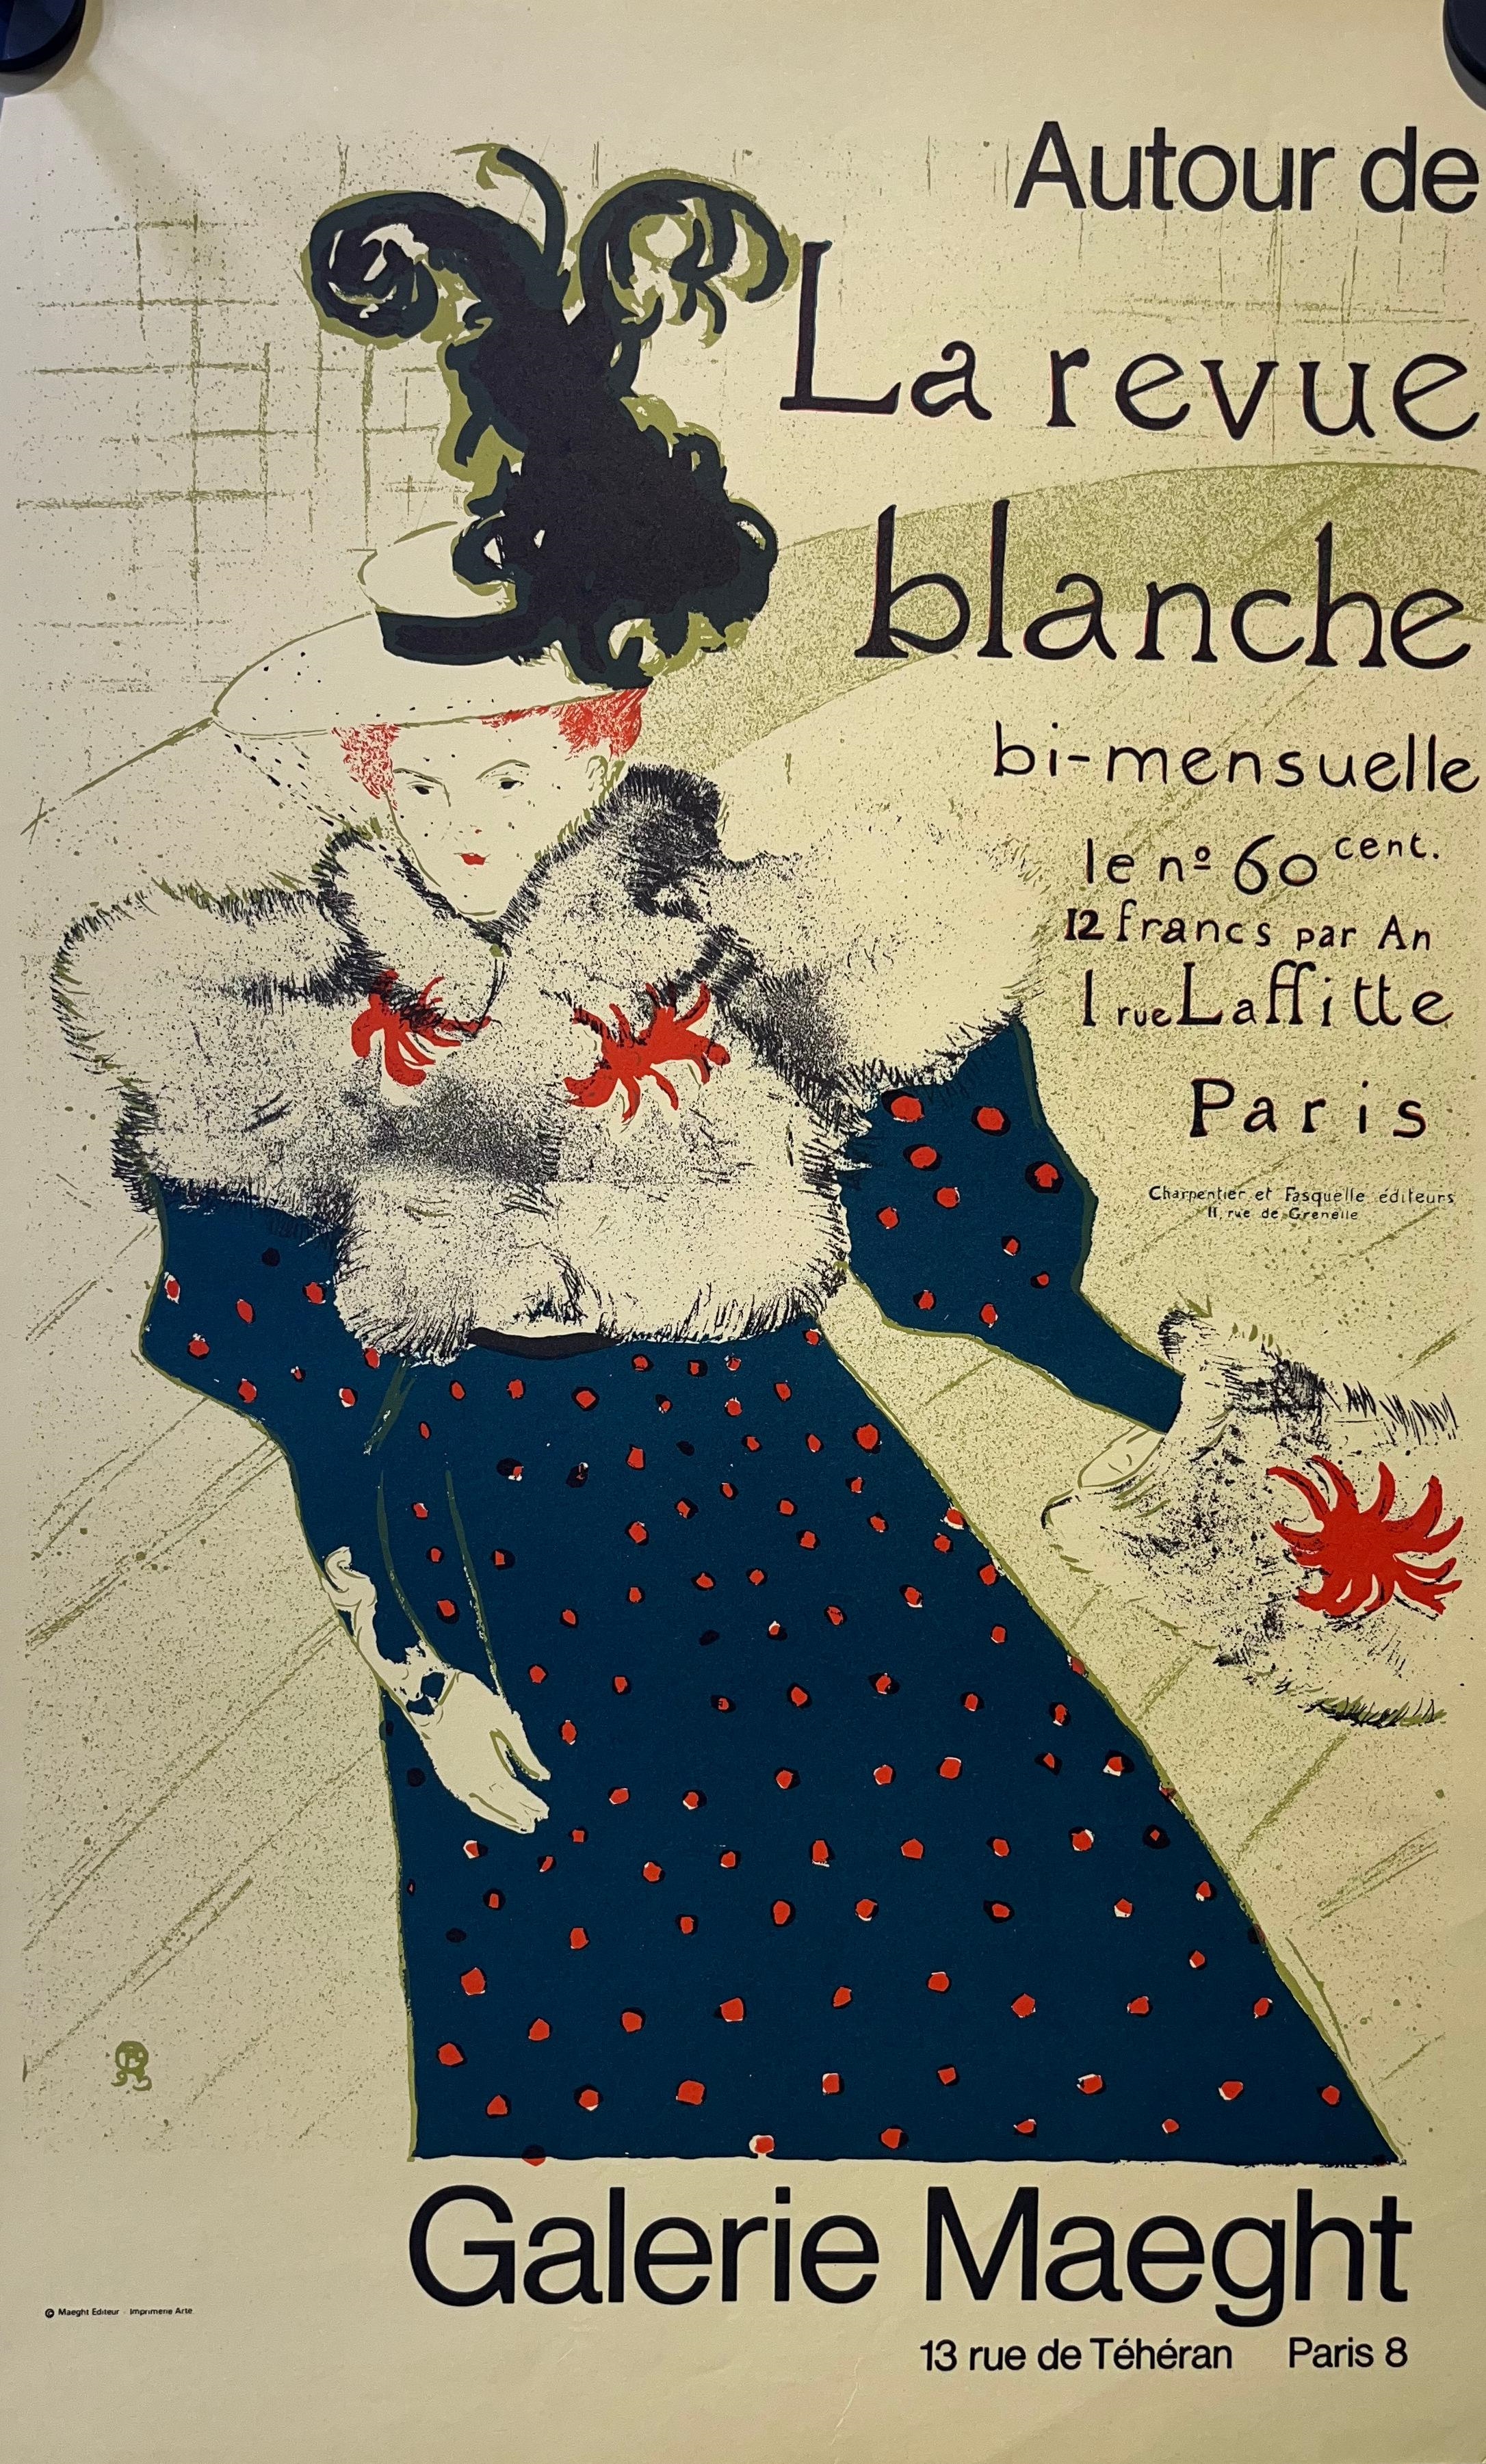 Artwork by Henri de Toulouse-Lautrec, Henri de Toulouse Lautrec, France (1864-1901) Autor de La Revue Blanche, Galerie Maeght, Original Exhibtion Poster, Made of Poster